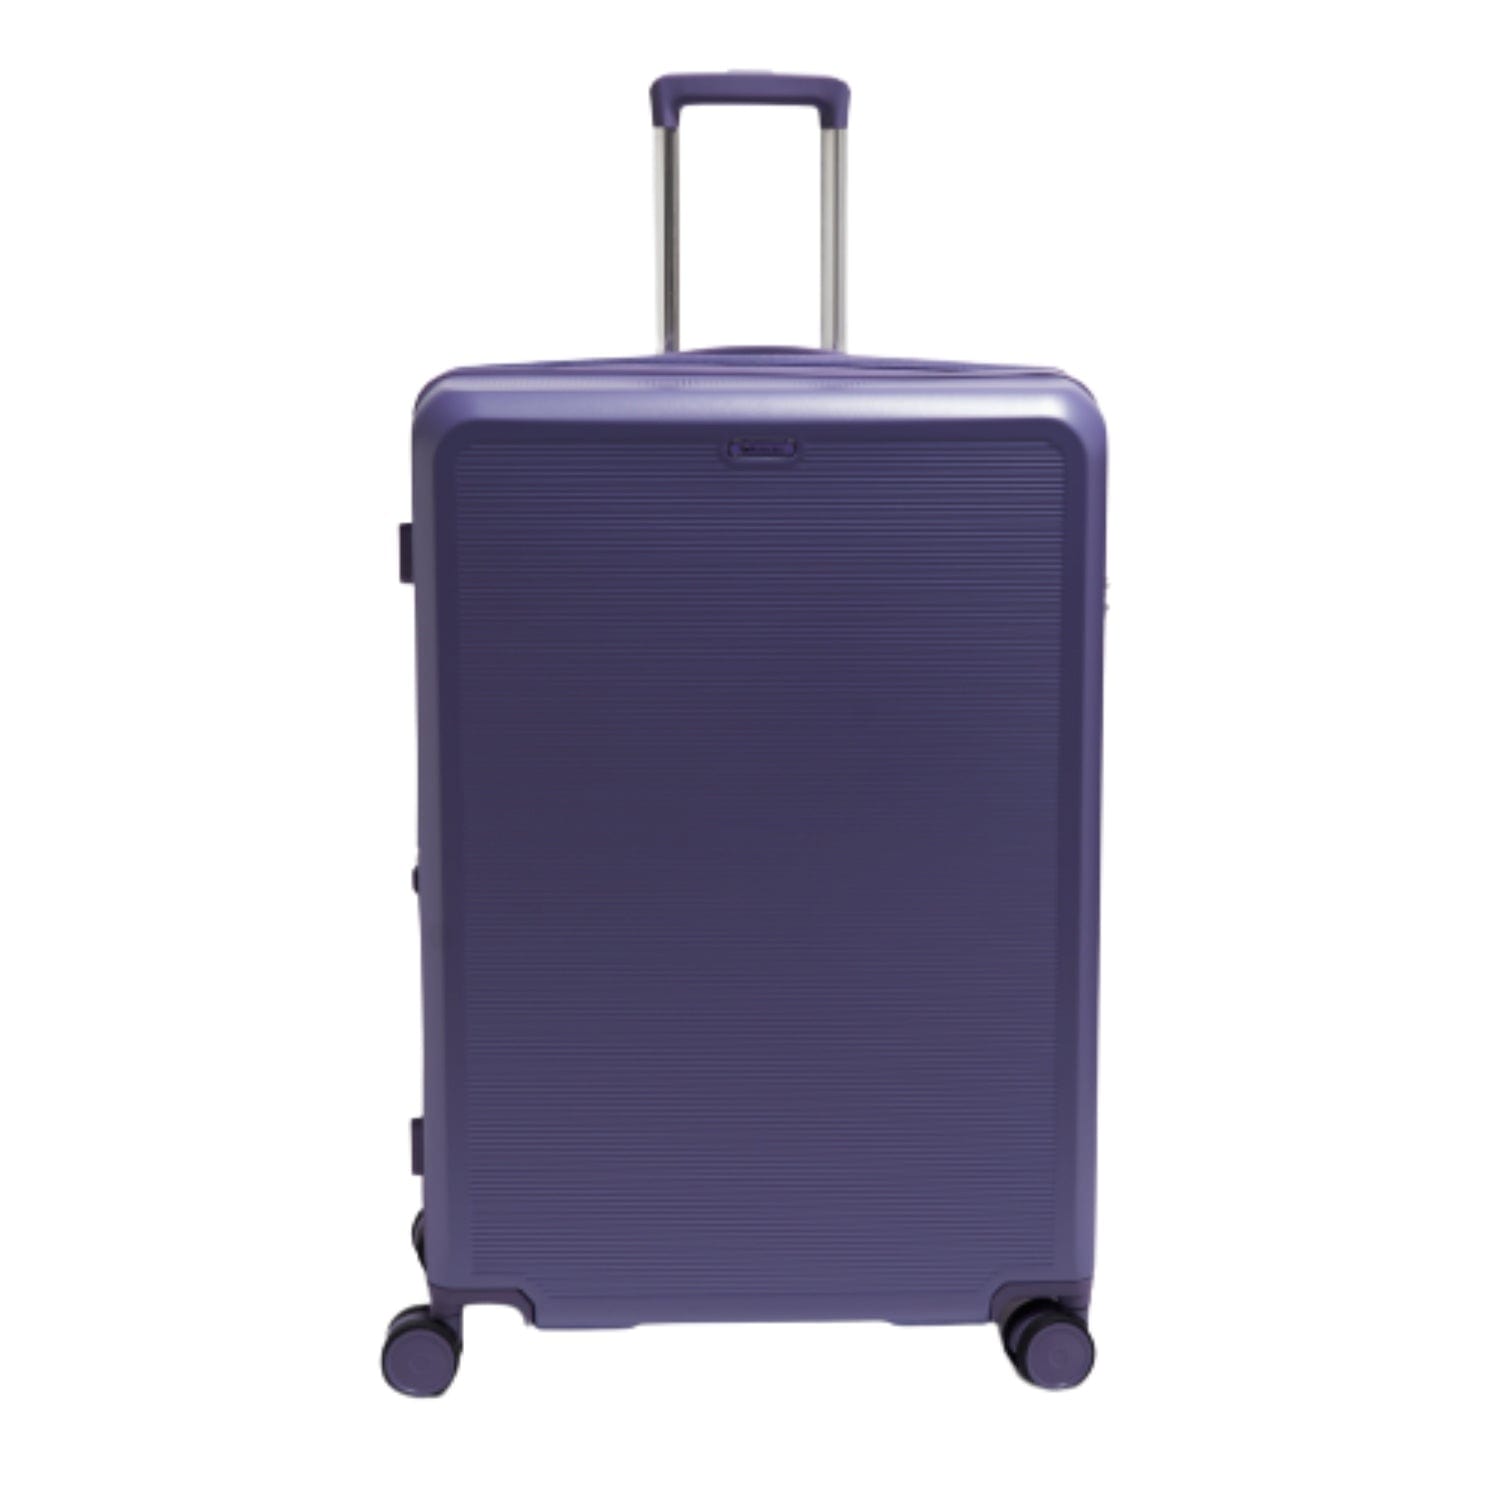 Echolac Sense 56+67+78cm Hardcase Expandable 4 Double Wheel 3 Piece Luggage Trolley Set Purple - CTH0023S -3PC SET PURPLE